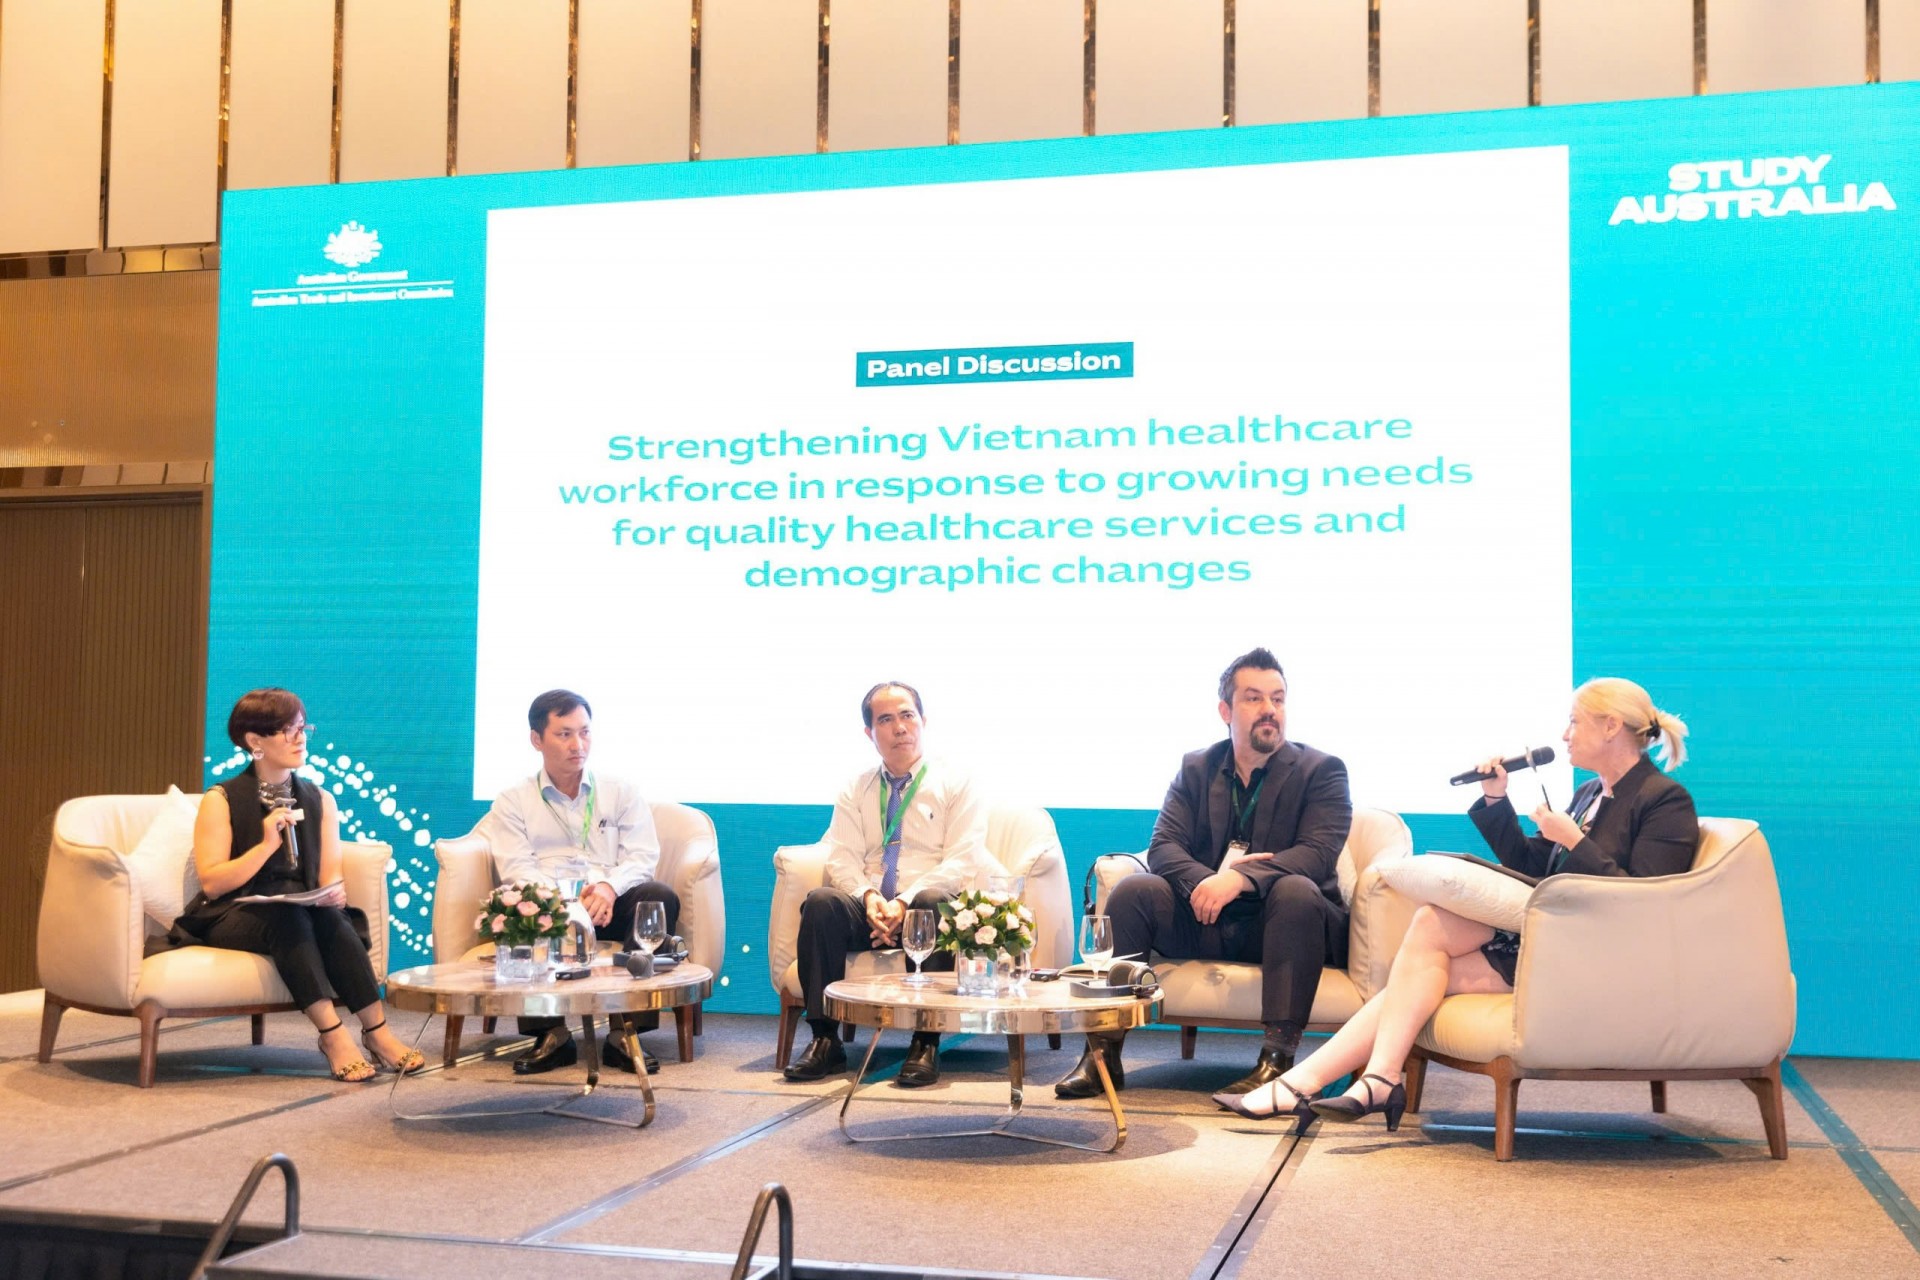 Thúc đẩy các cơ hội hợp tác giữa Australia - Việt Nam trong lĩnh vực y tế